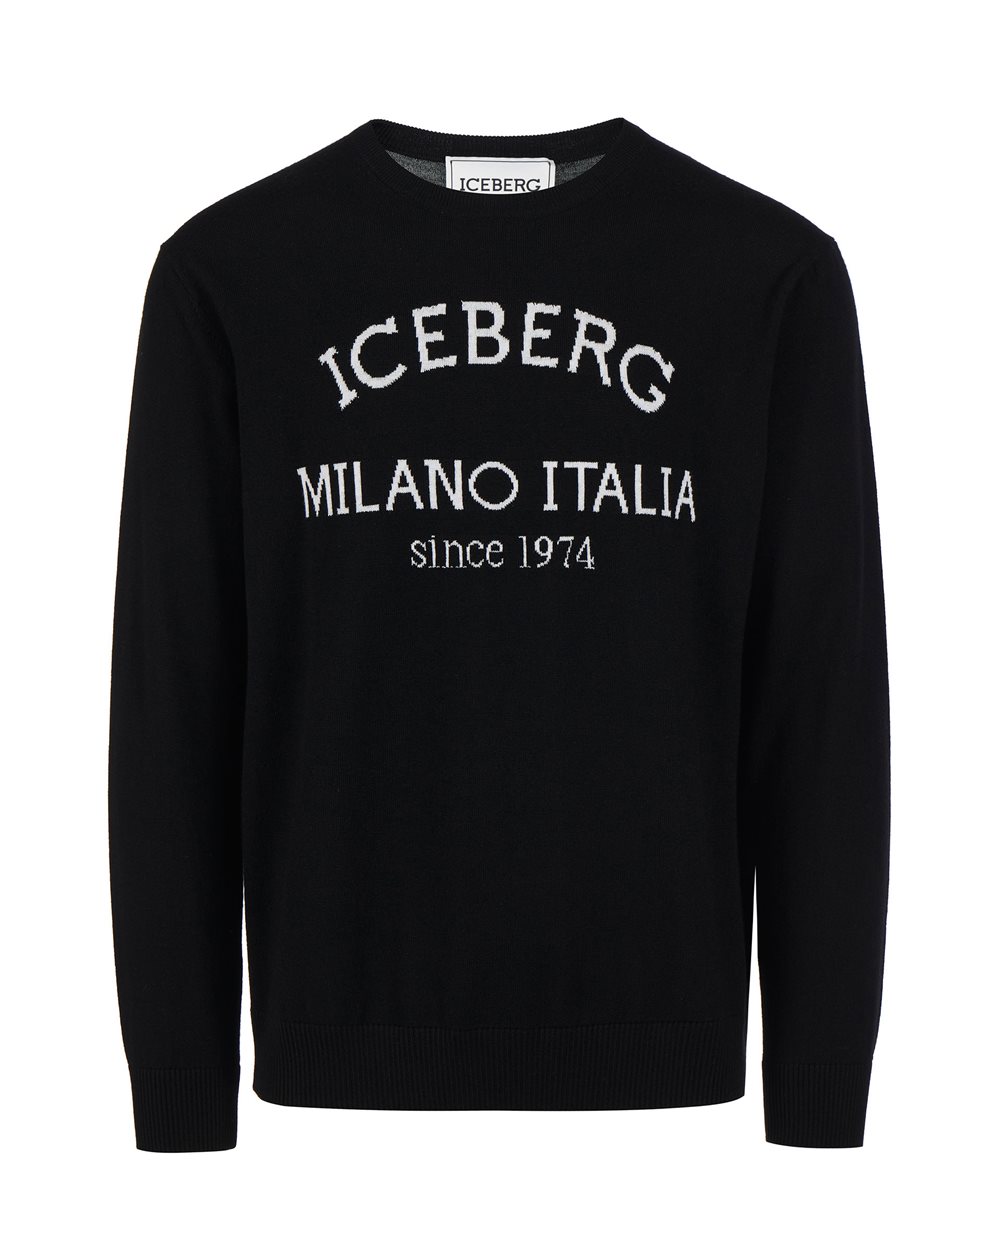 Black jumper with heritage logo - SALE | Iceberg - Official Website